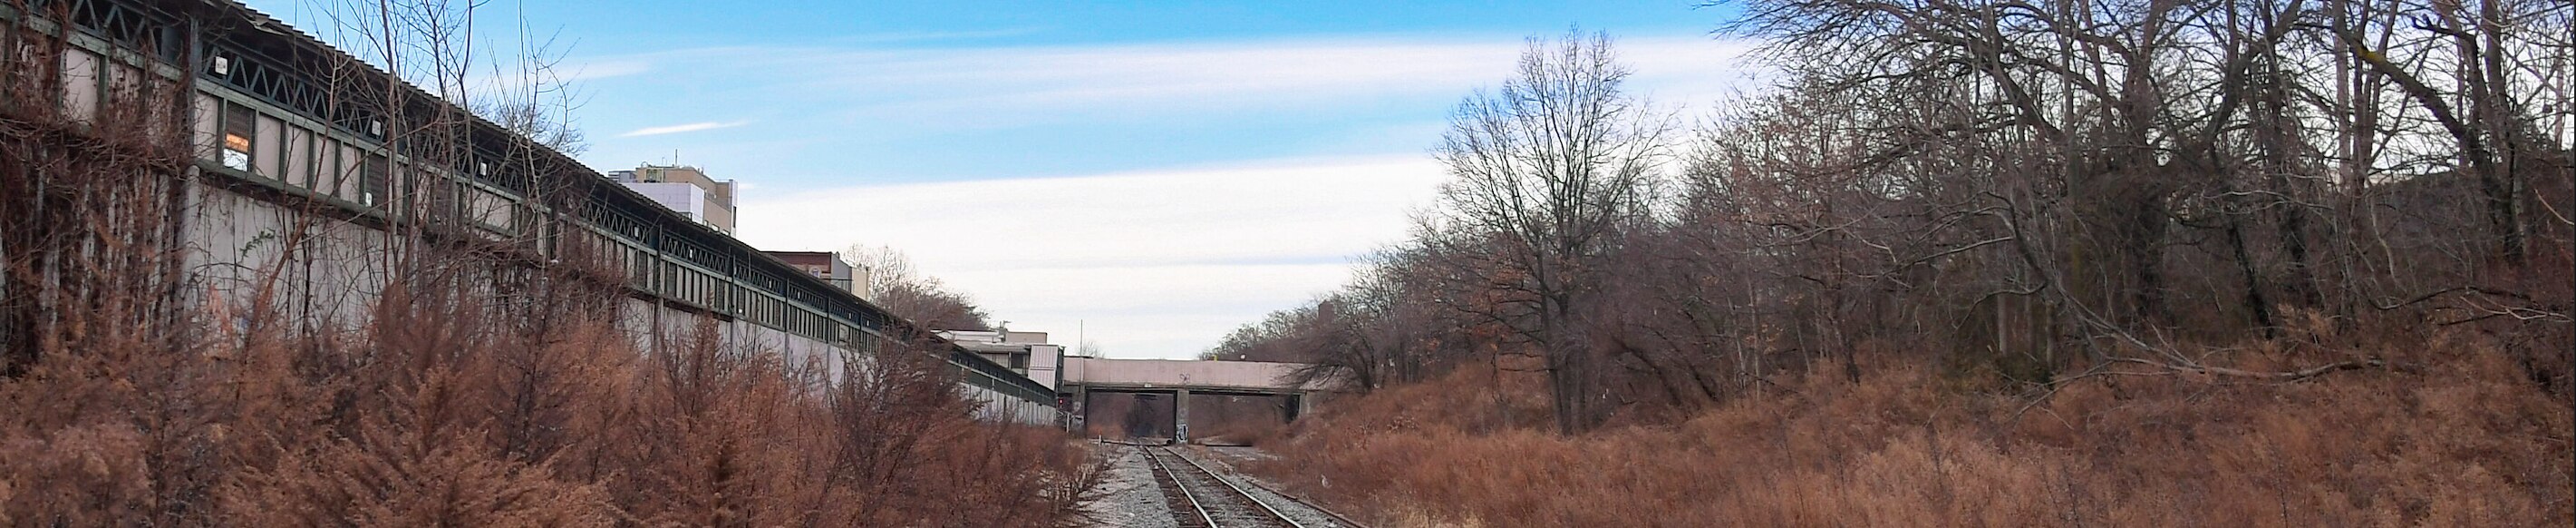 Una linea ferroviaria abbandonata circondata da alberi